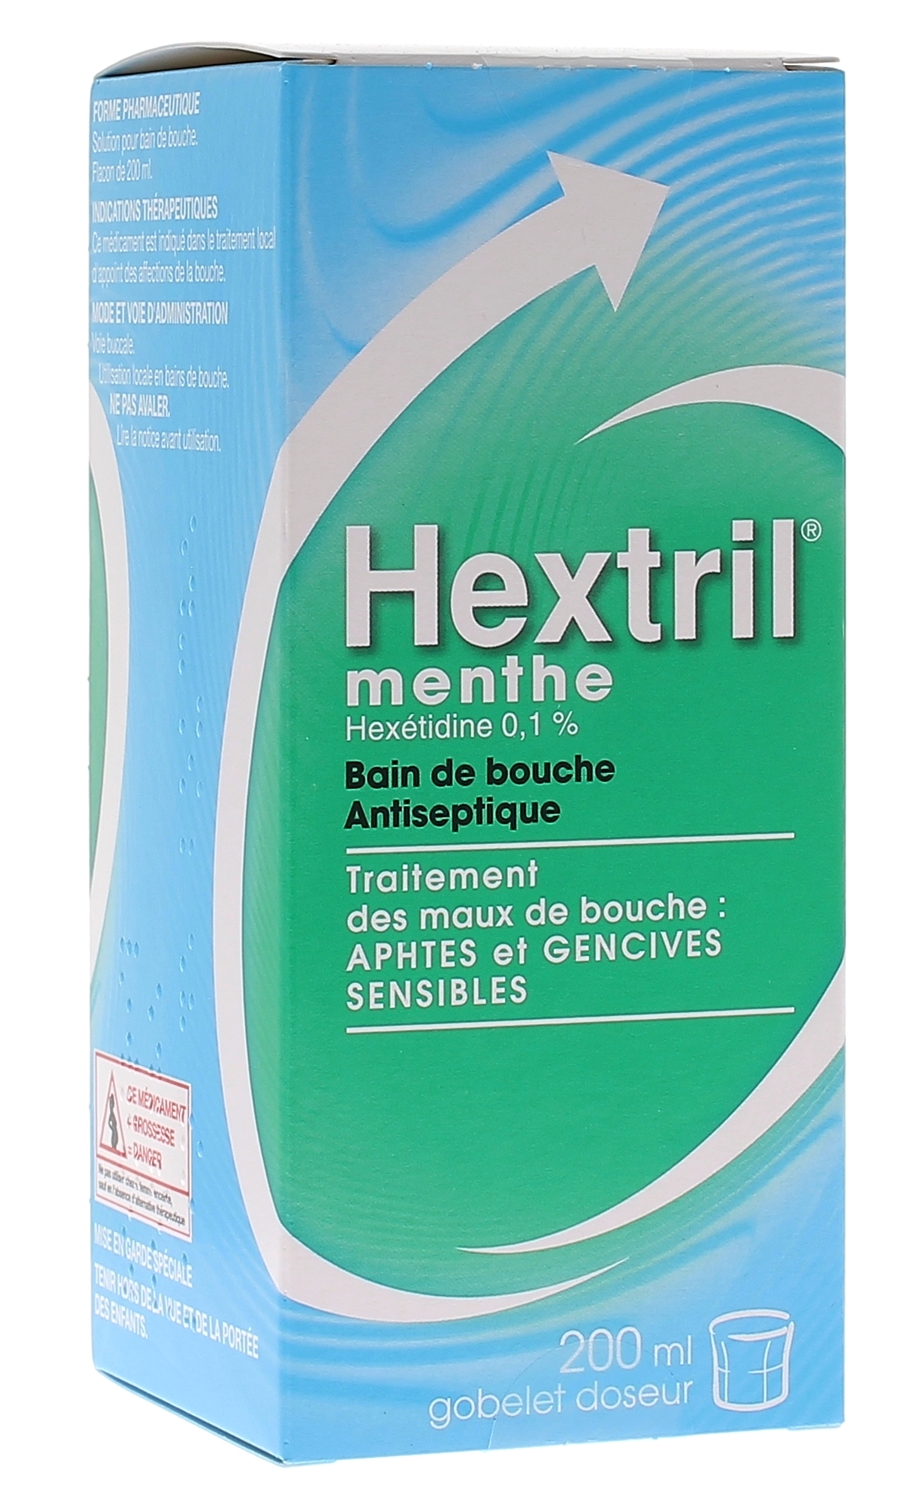 Hextril menthe 0,1% solution pour bain de bouche - flacon de 200 ml Hextril  3400935970565 : Pharmacie en ligne et parapharmacie en ligne Pharmashopi